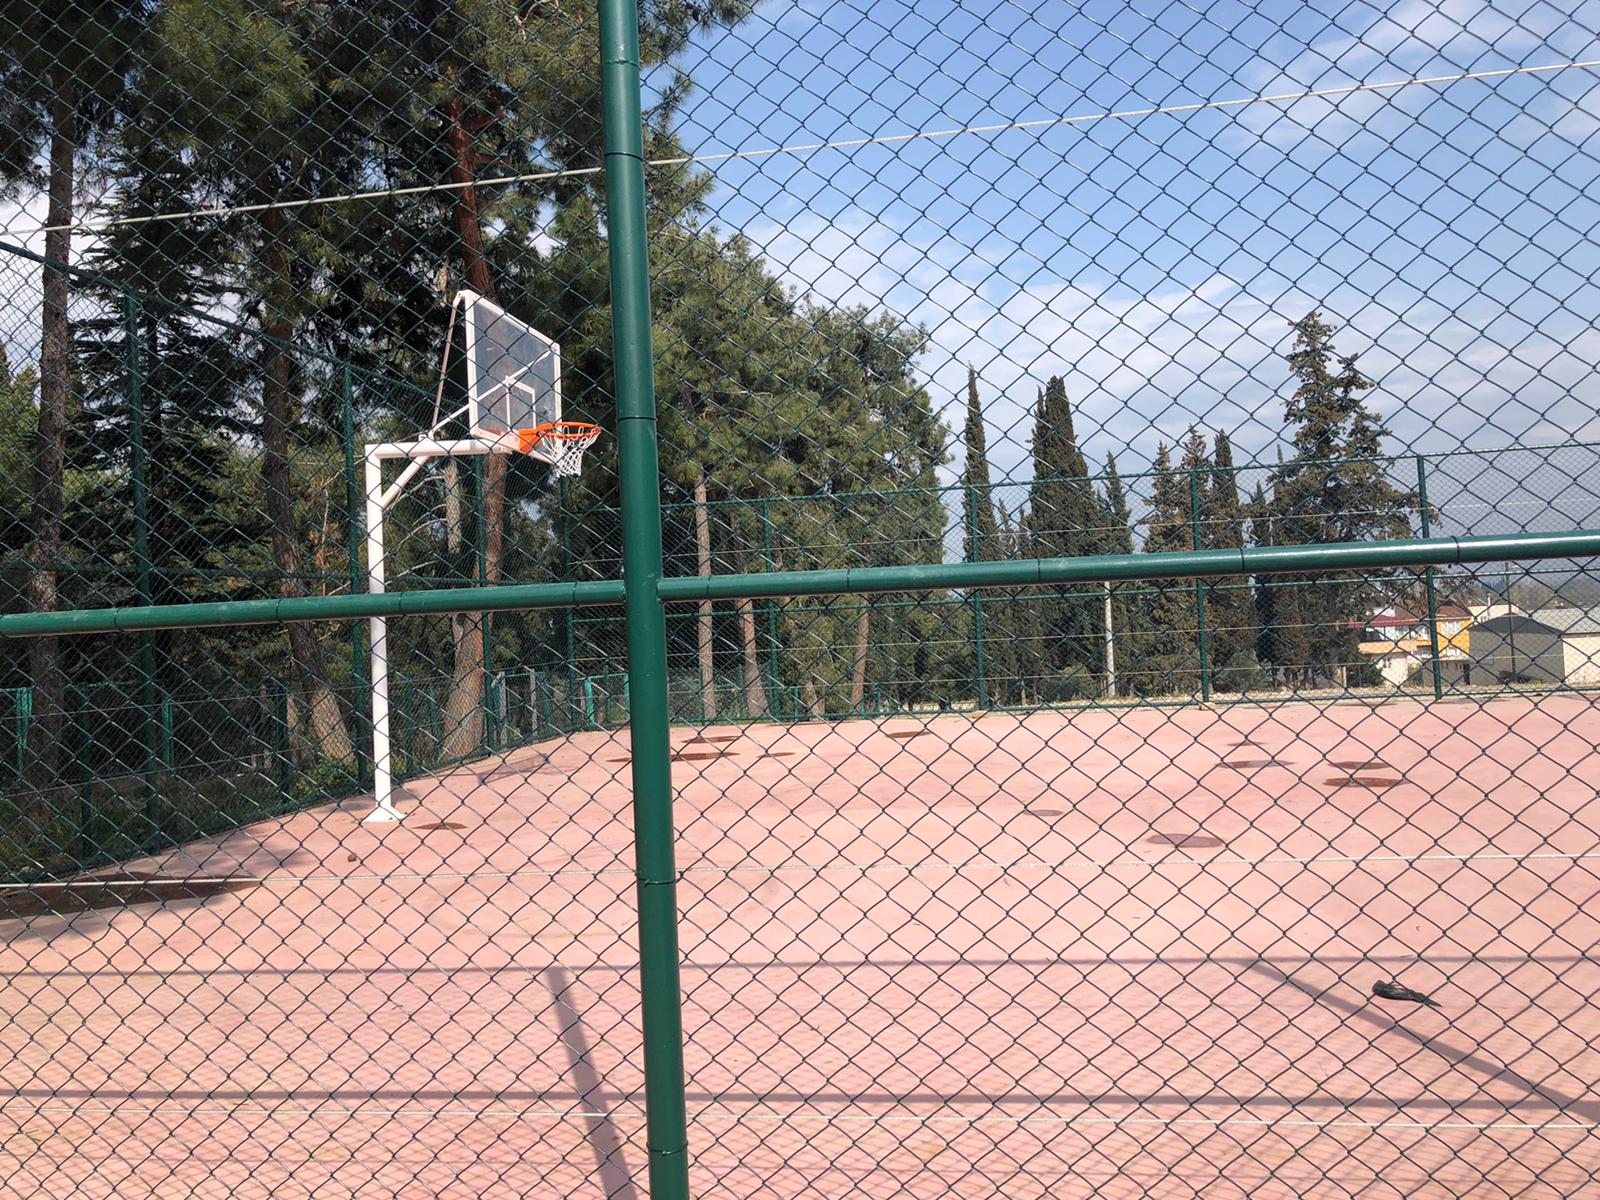  Orhangazi’de İki Mahalleye Basketbol Sahası Yapıldı